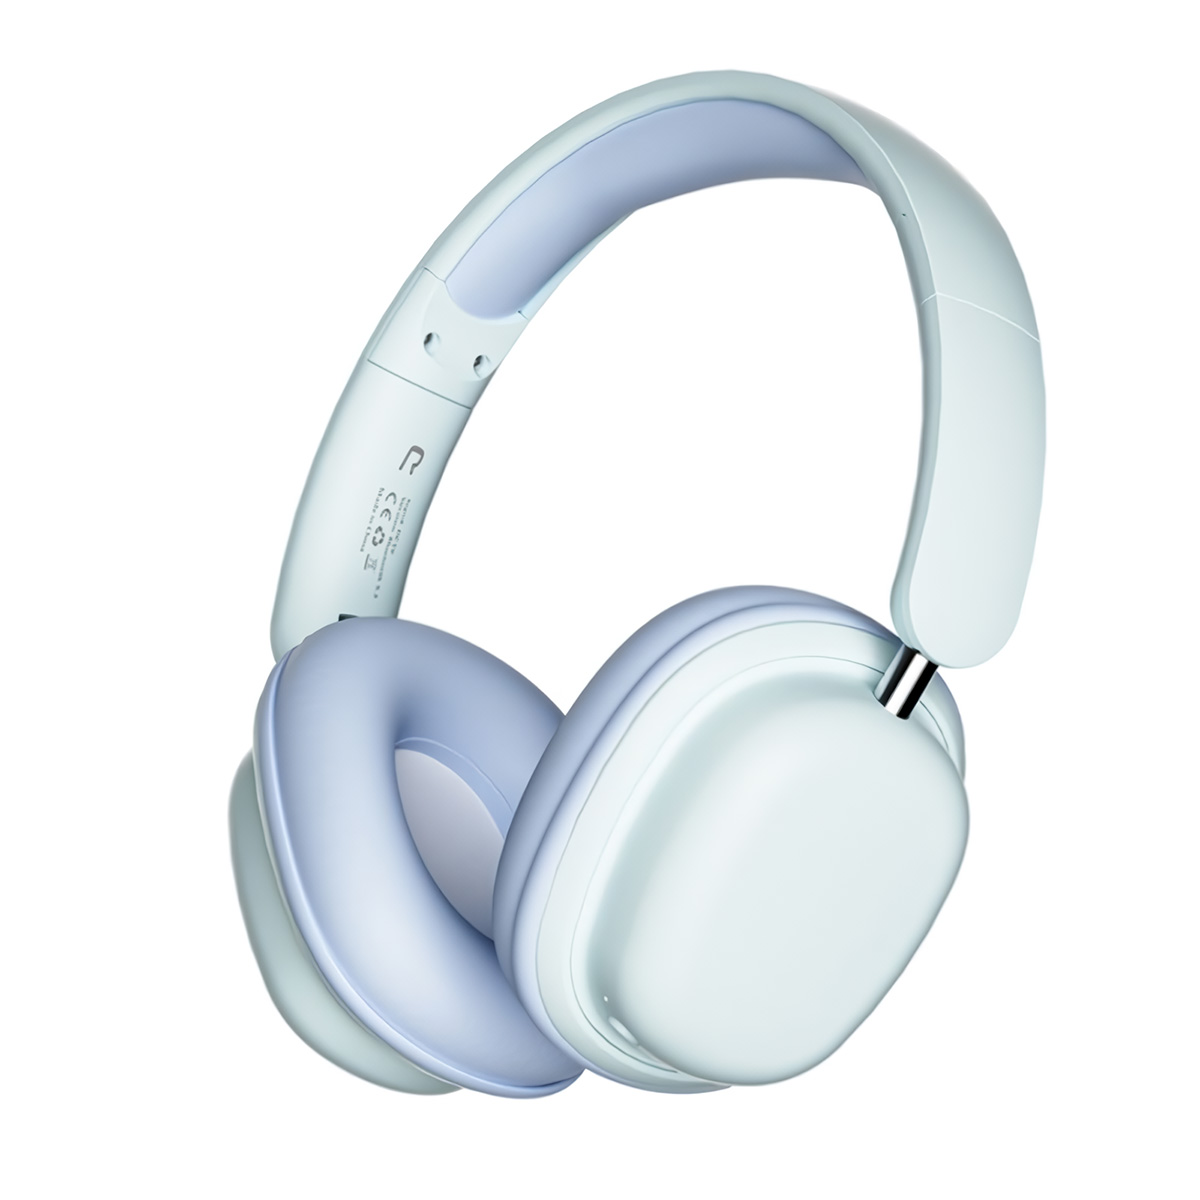 Auriculares Bluetooth Klack Sy-t1 Plegables Micrófono 20h De Autonomía  MKP